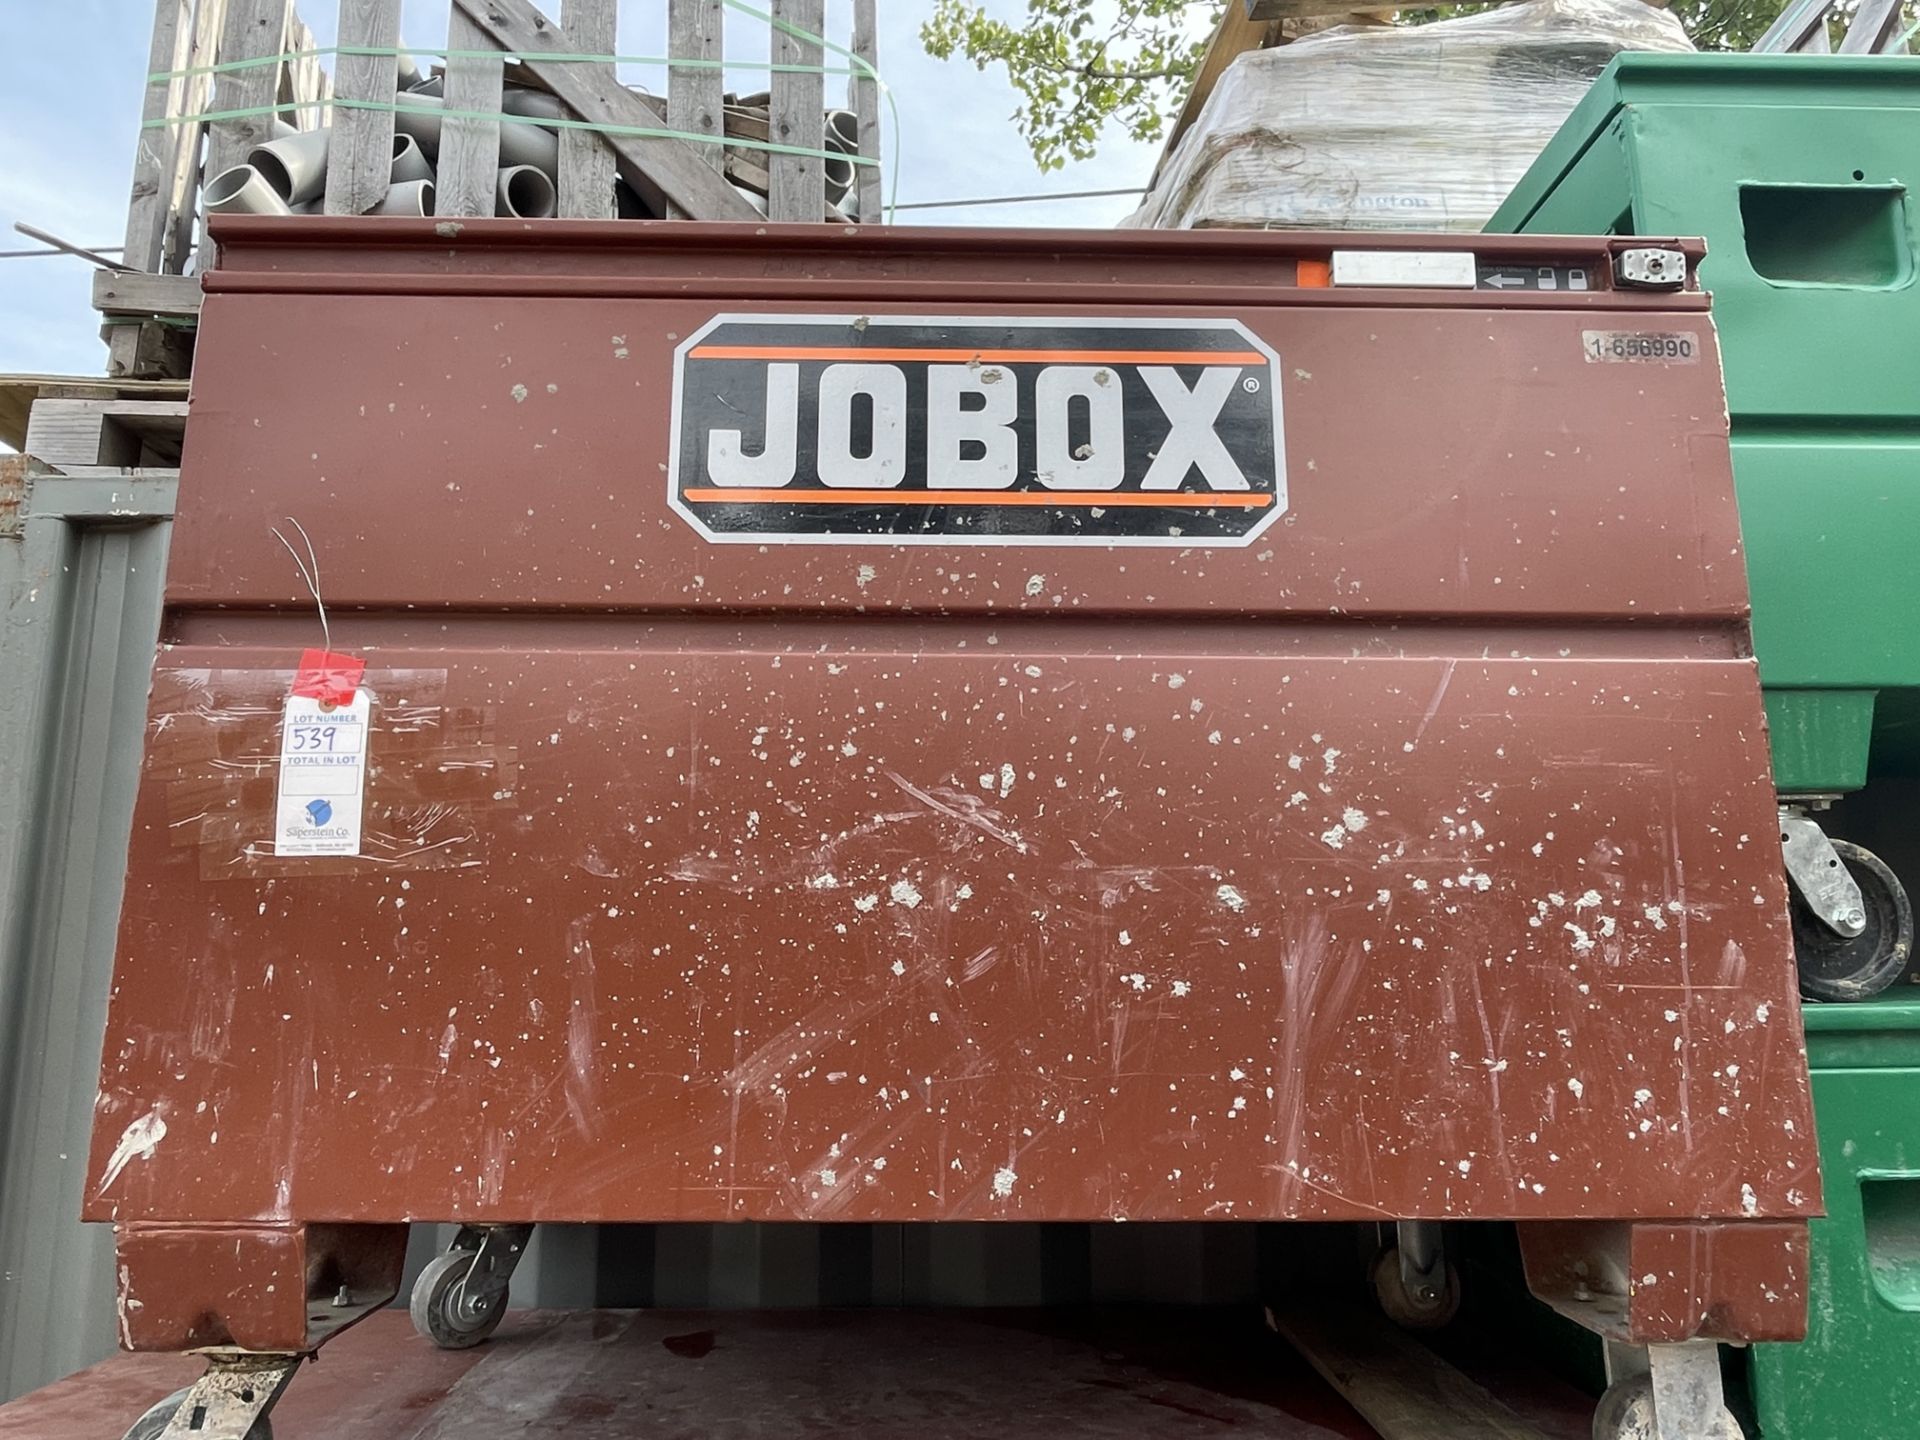 Jobox Job Box #1-656990 5' x 2.5' x 4'